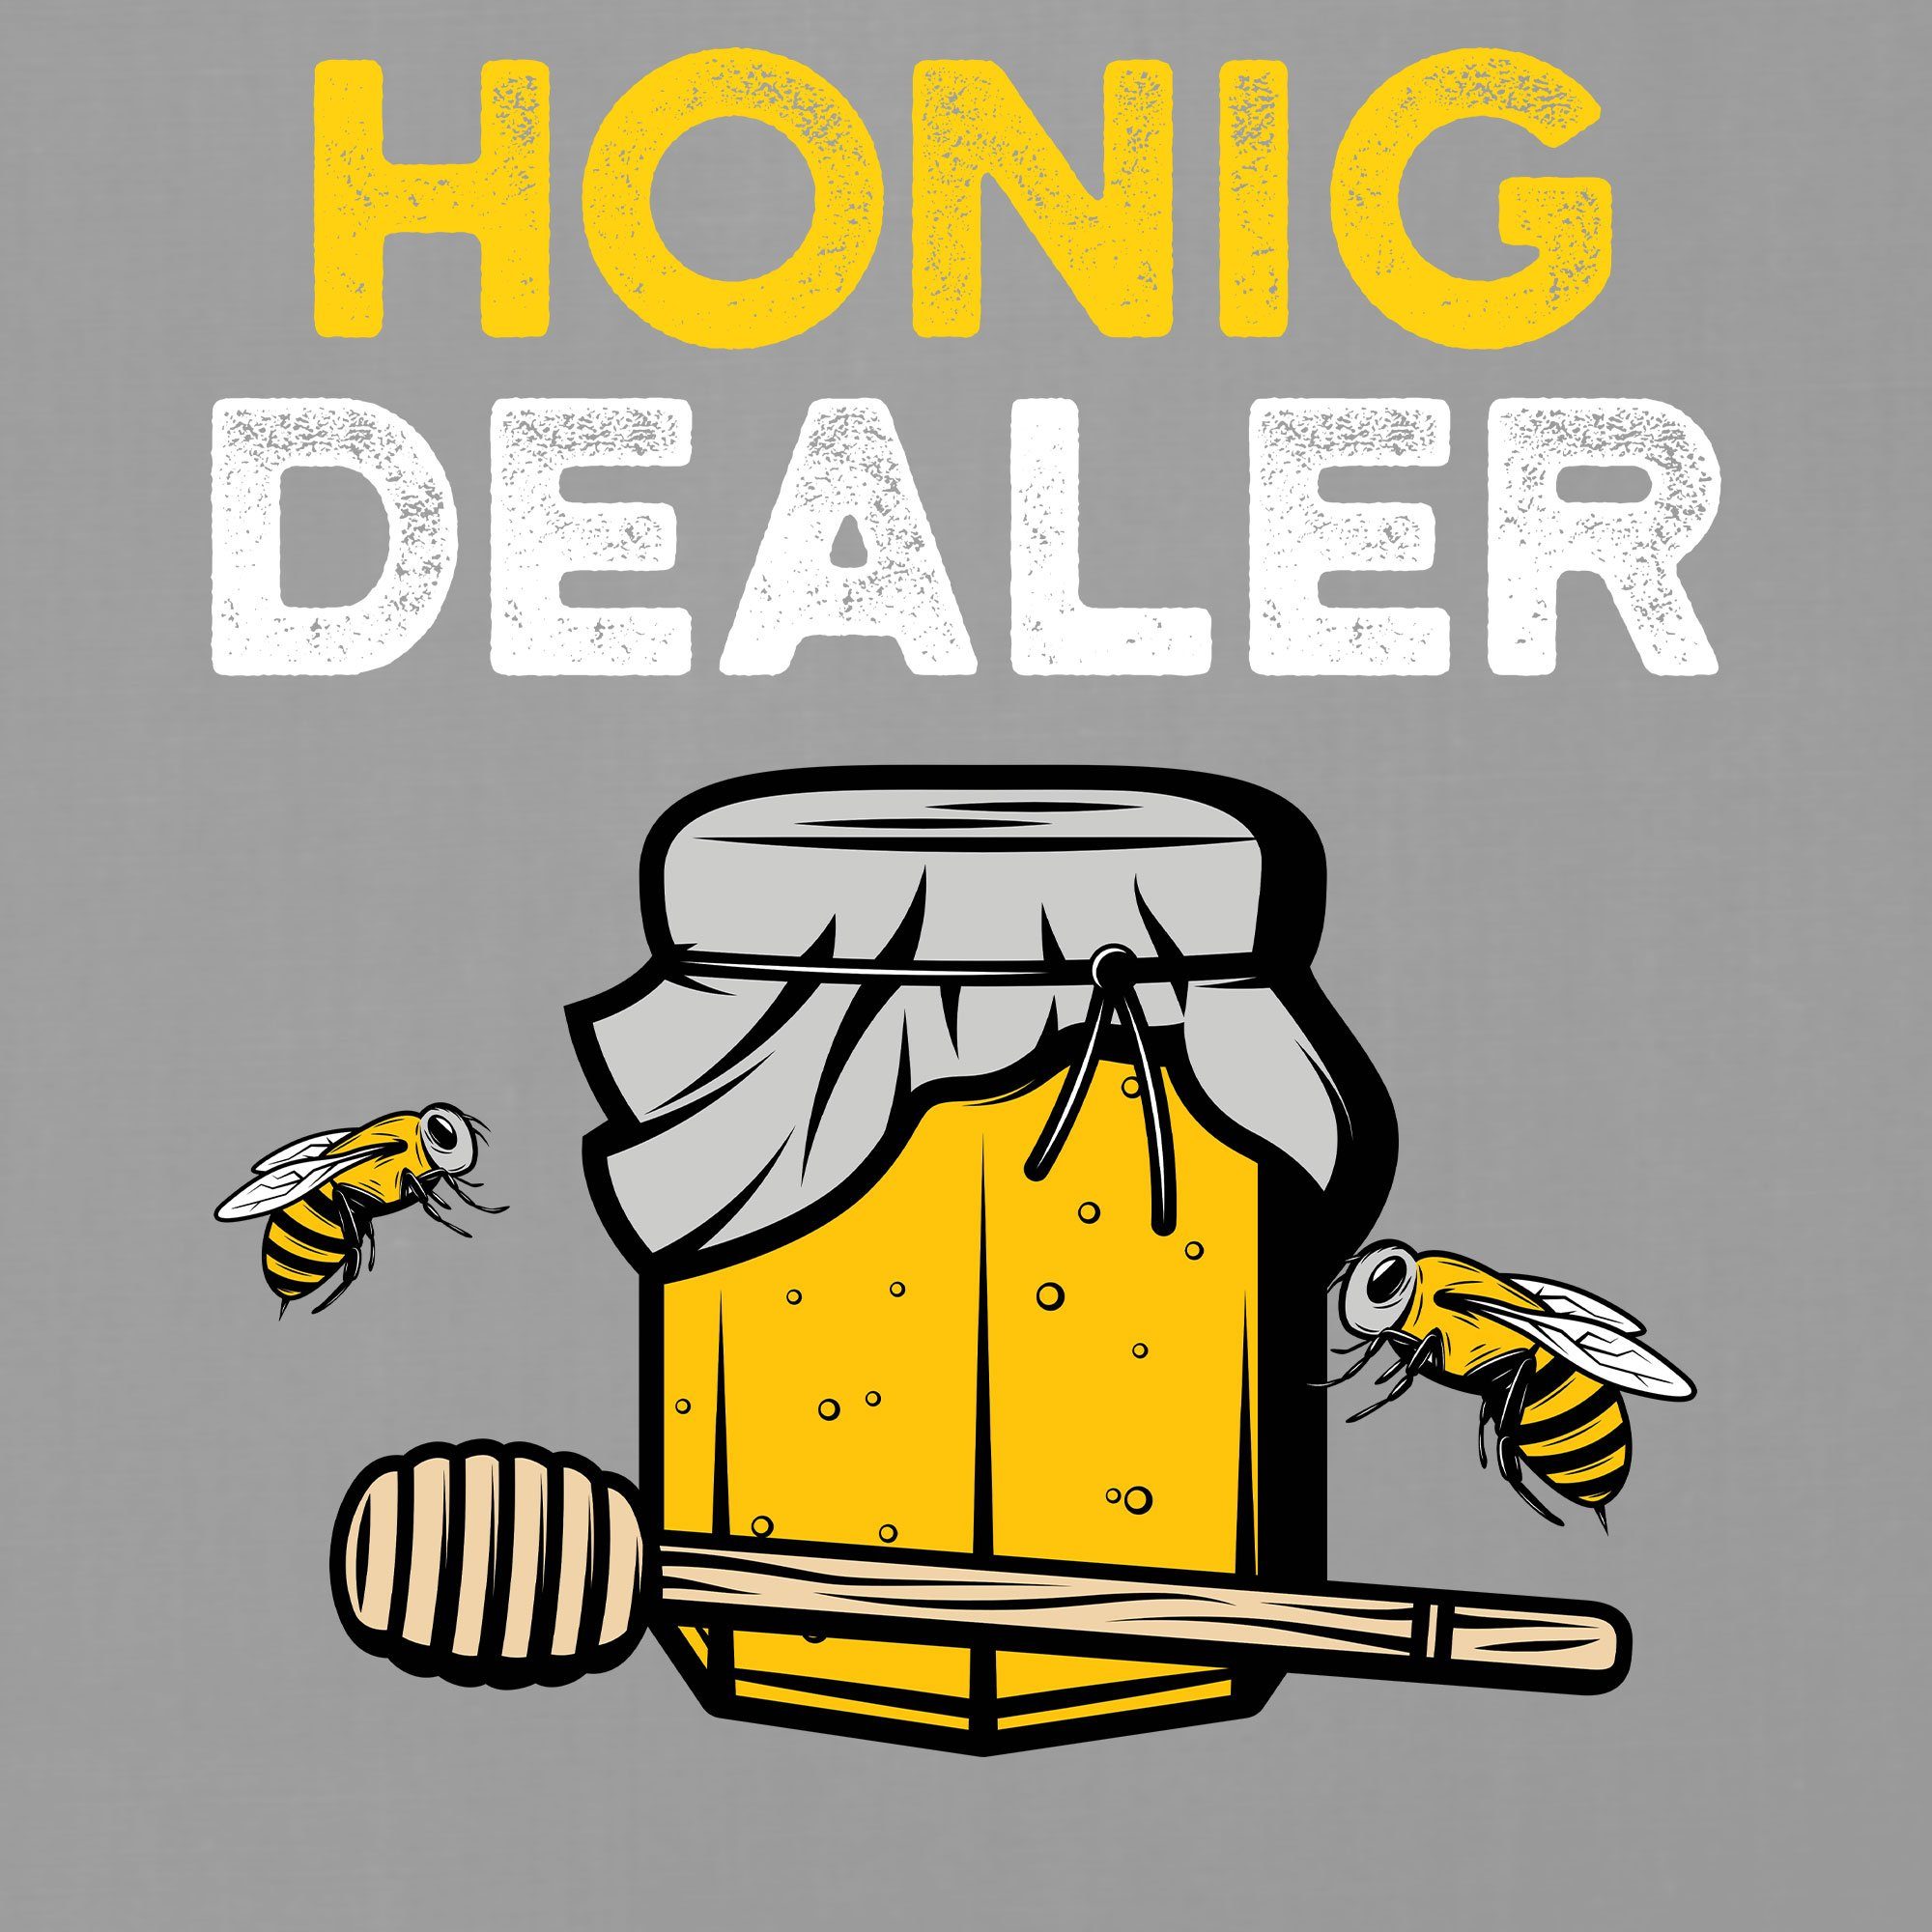 Heather Herren Bienenzüchter Quattro Dealer Imker Biene - T-Shirt Kurzarmshirt Honig Formatee Honig Grau (1-tlg)